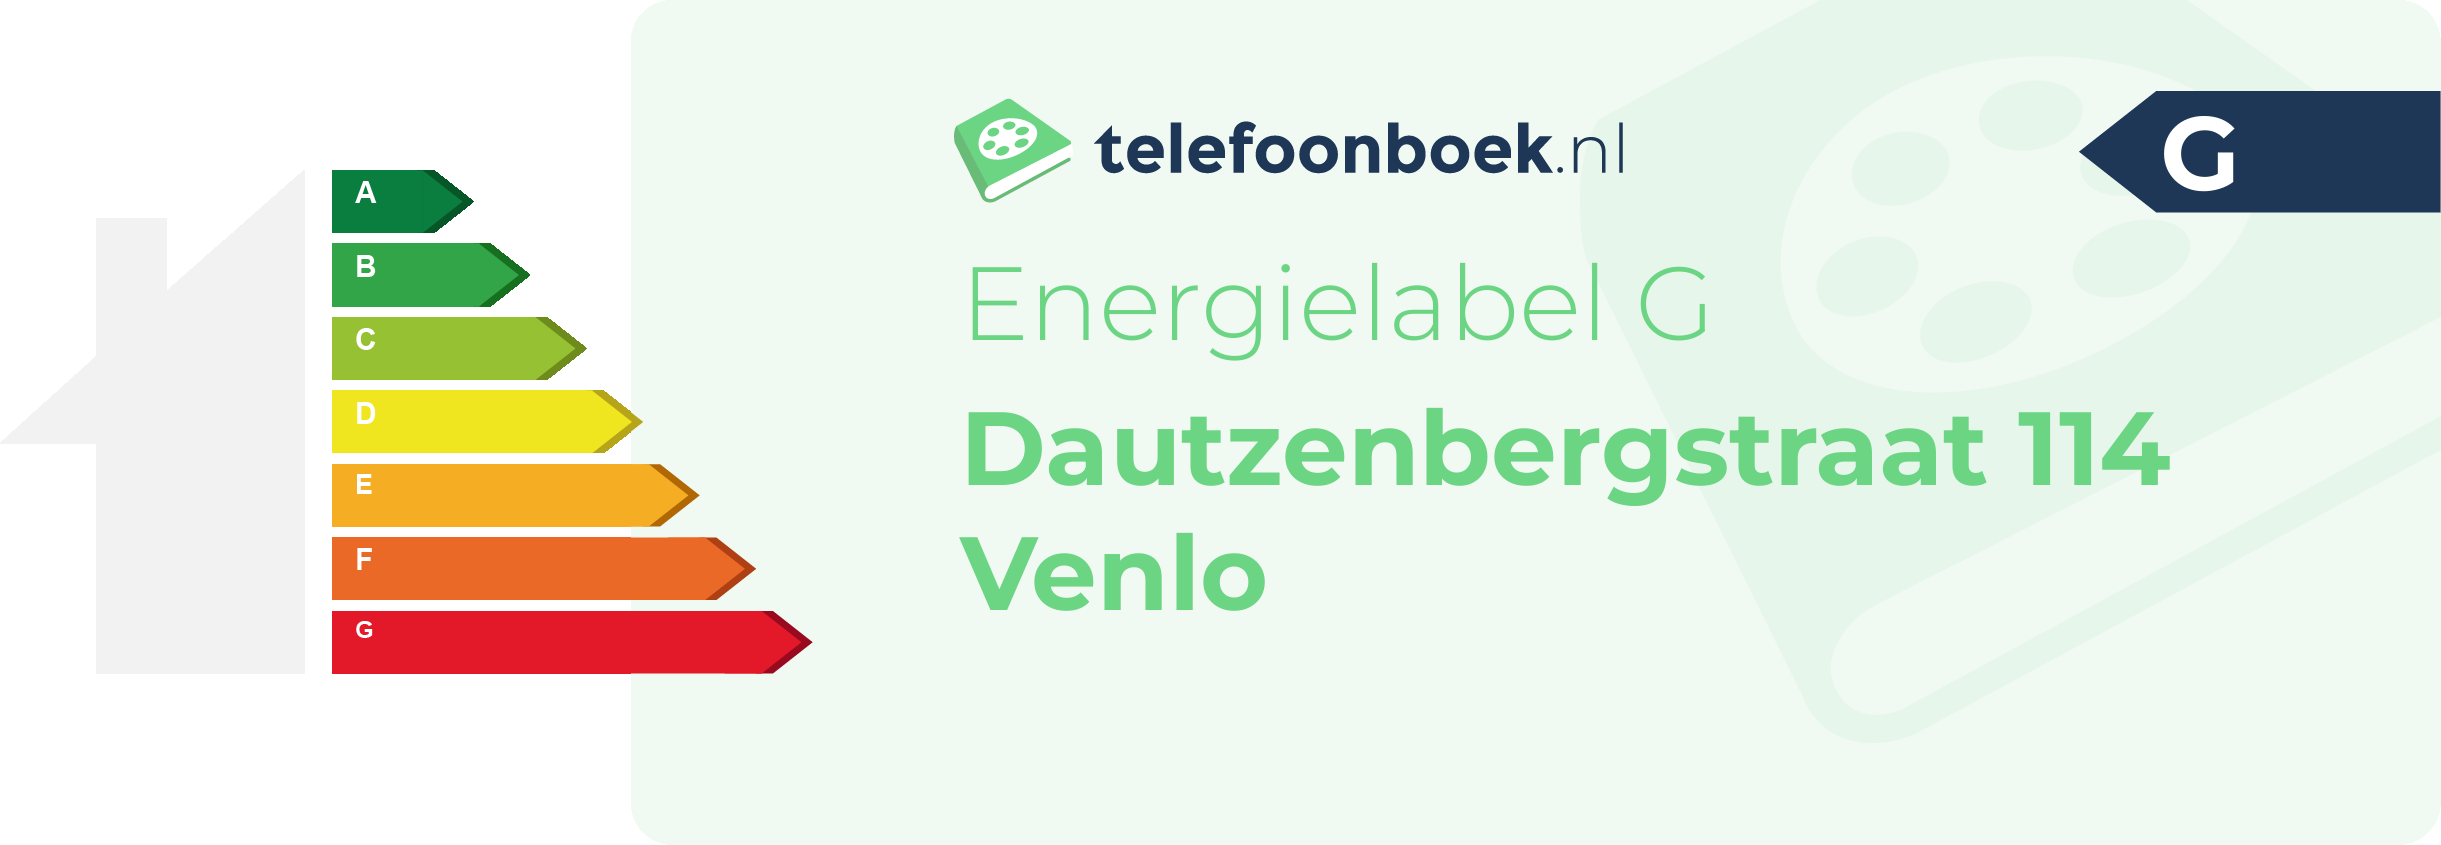 Energielabel Dautzenbergstraat 114 Venlo